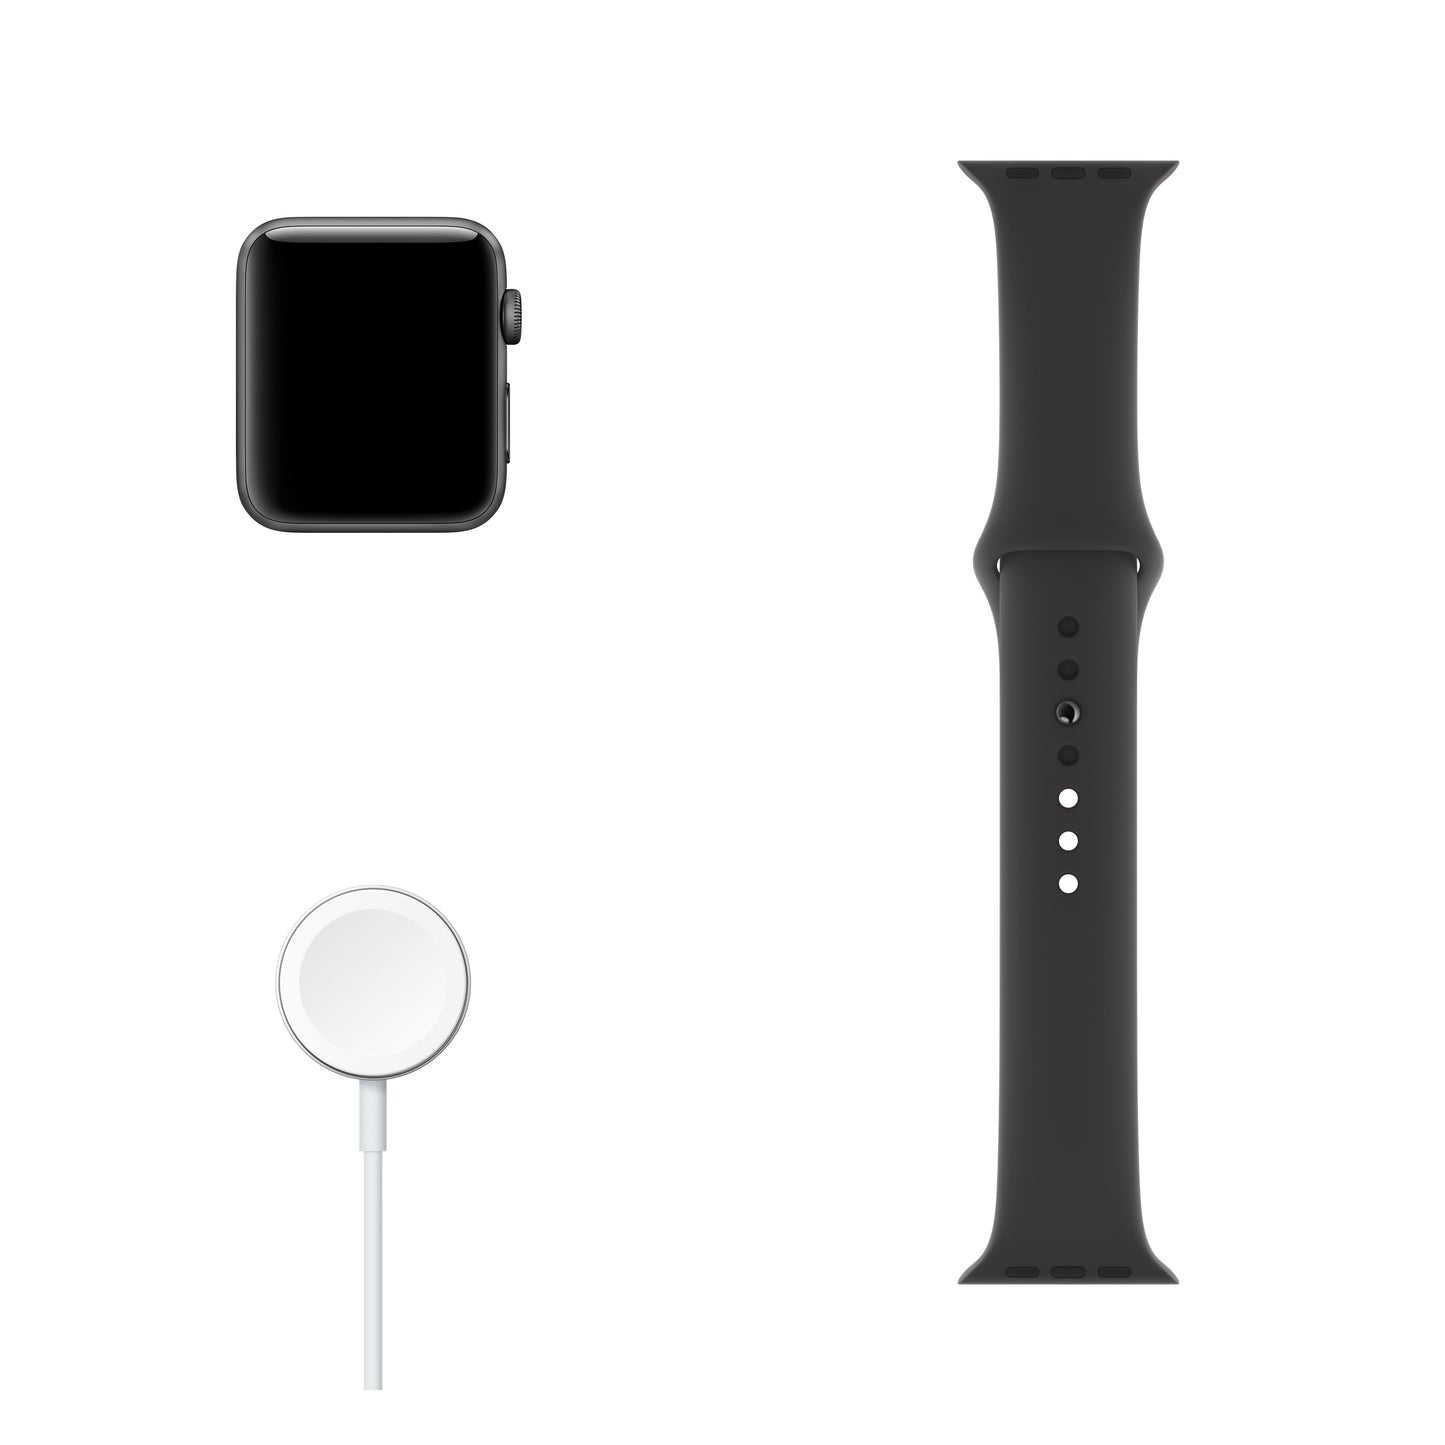 Apple Watch Series 3 (GPS) con caja de 42 mm de aluminio en gris espacial y correa deportiva negra